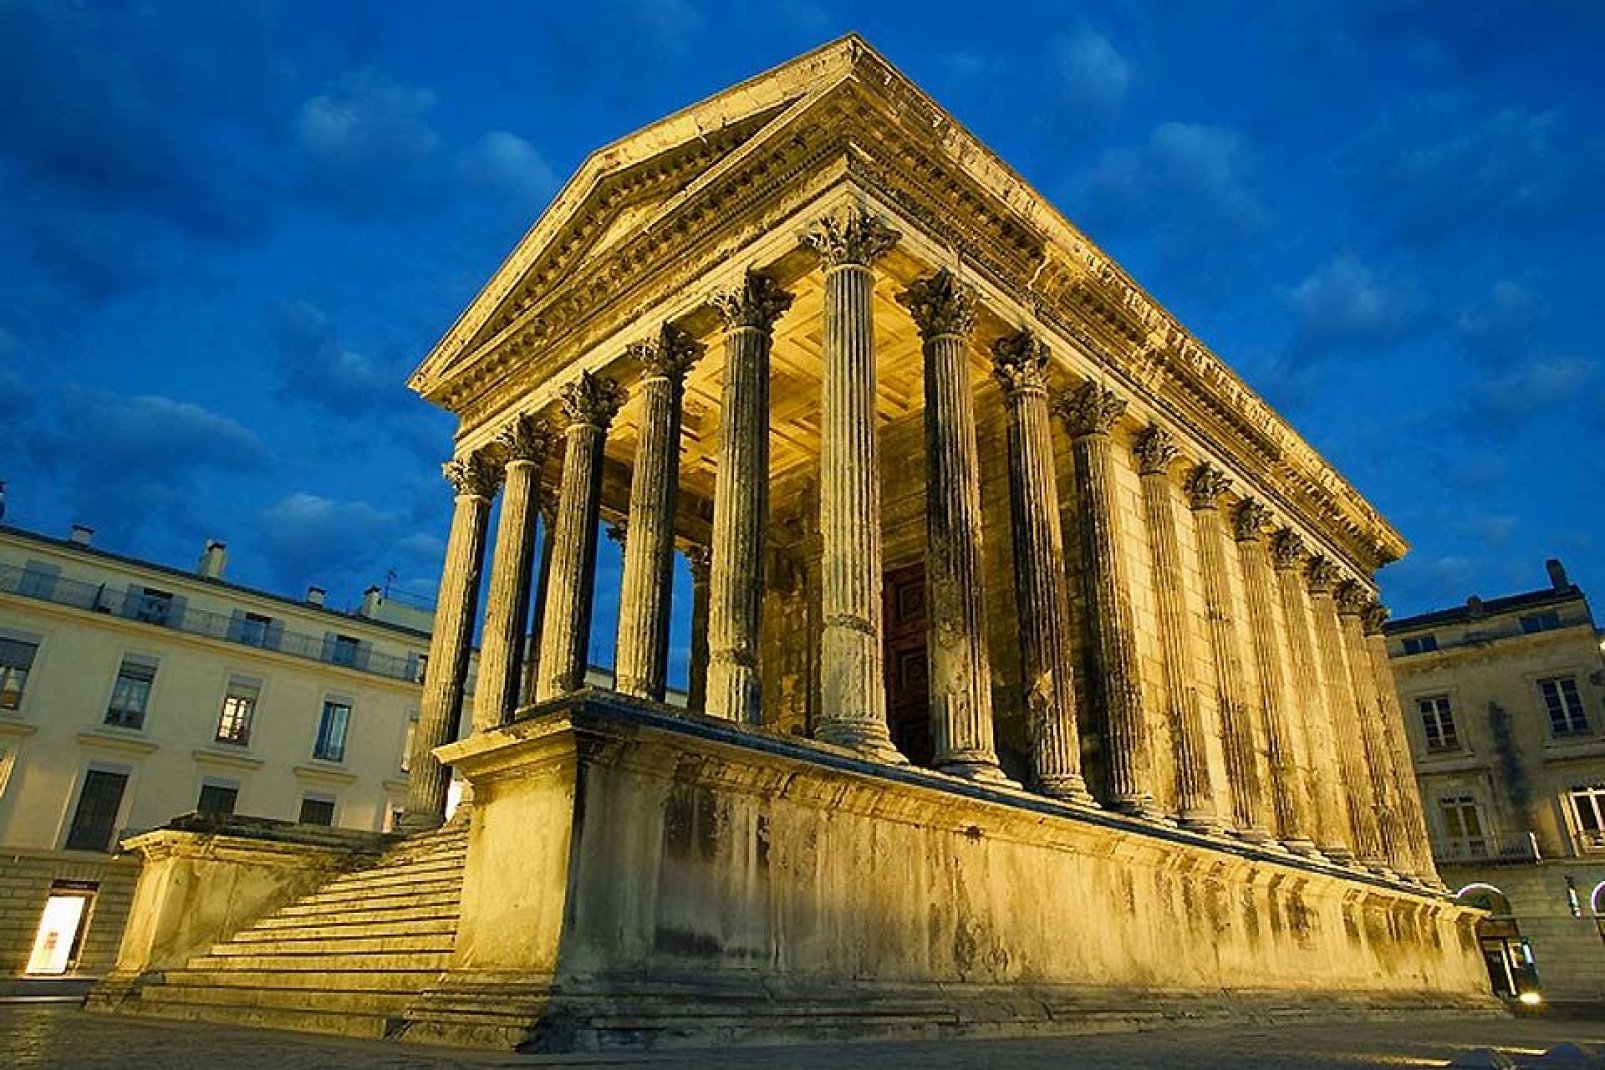 Die Maison Carrée ist der einzige römische Tempel der Welt, der vollständig erhalten ist. Hier wird der 20minütige 3D-Film "Helden von Nimes" auf eine riesige Leinwand projiziert.